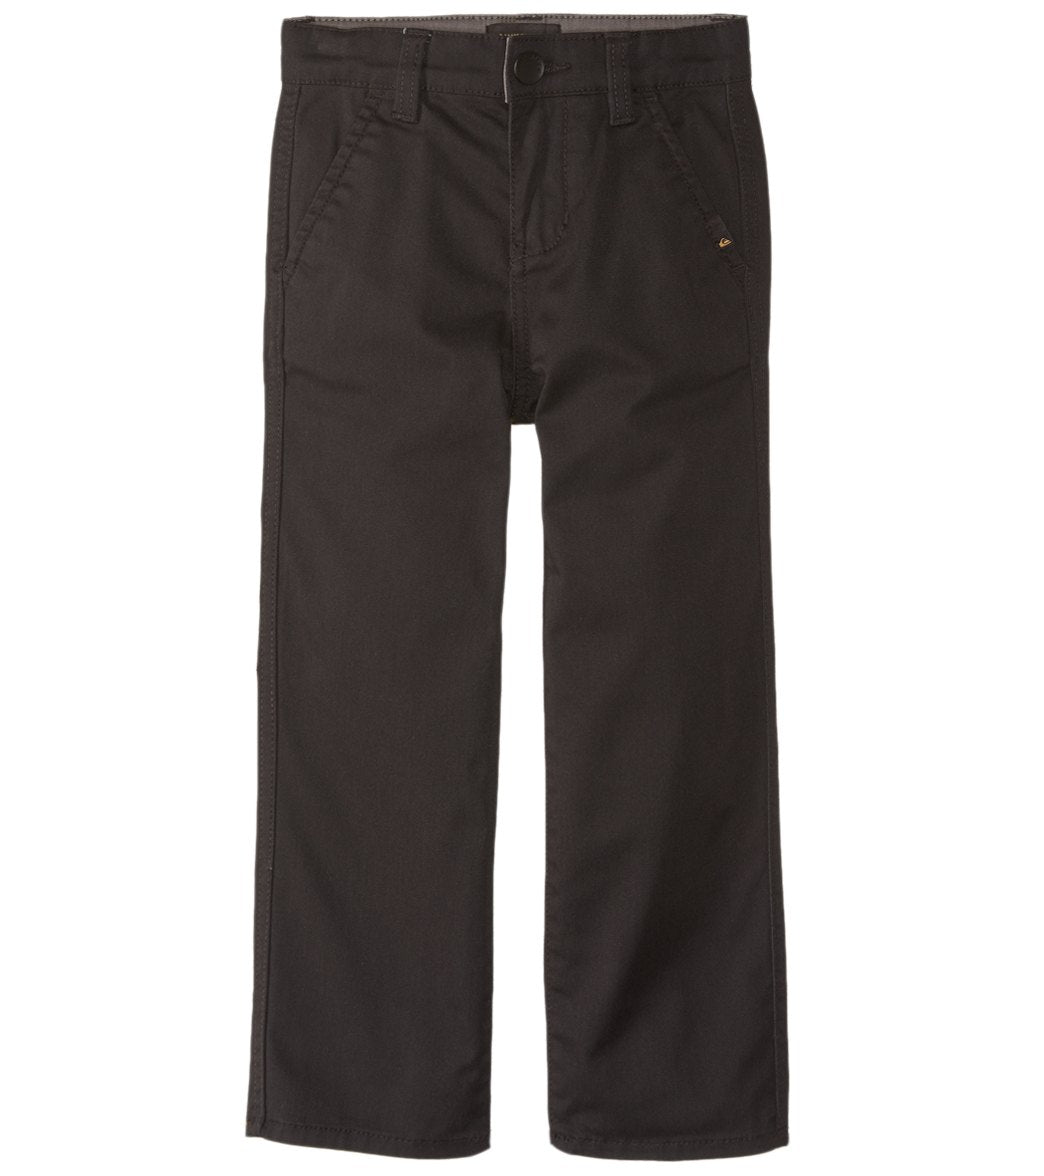 Quiksilver Boys' Everyday Union Pants 2T-7X - Black 4T Cotton/Polyester - Swimoutlet.com